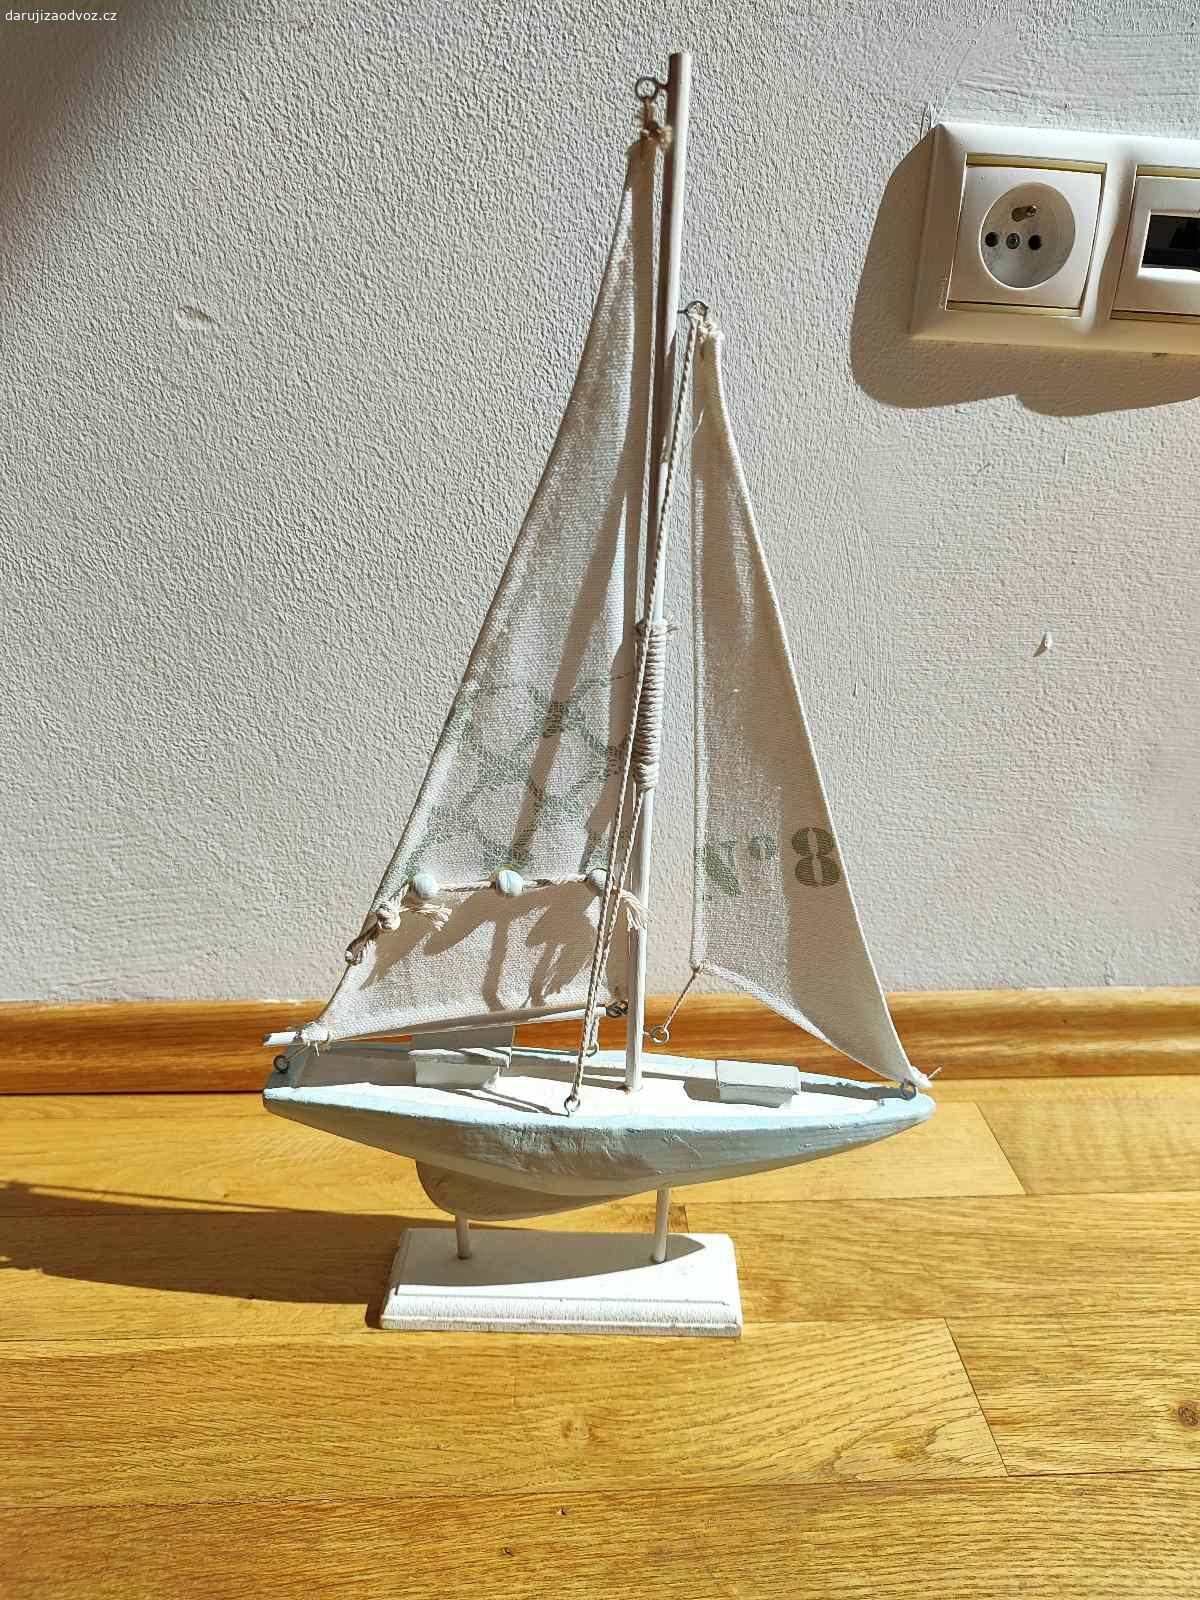 Daruji dekorativní plachetnici a stojánek na fotky. Plachetnice je asi 40 cm vysoká, poměrně křehká.

Stojánek 